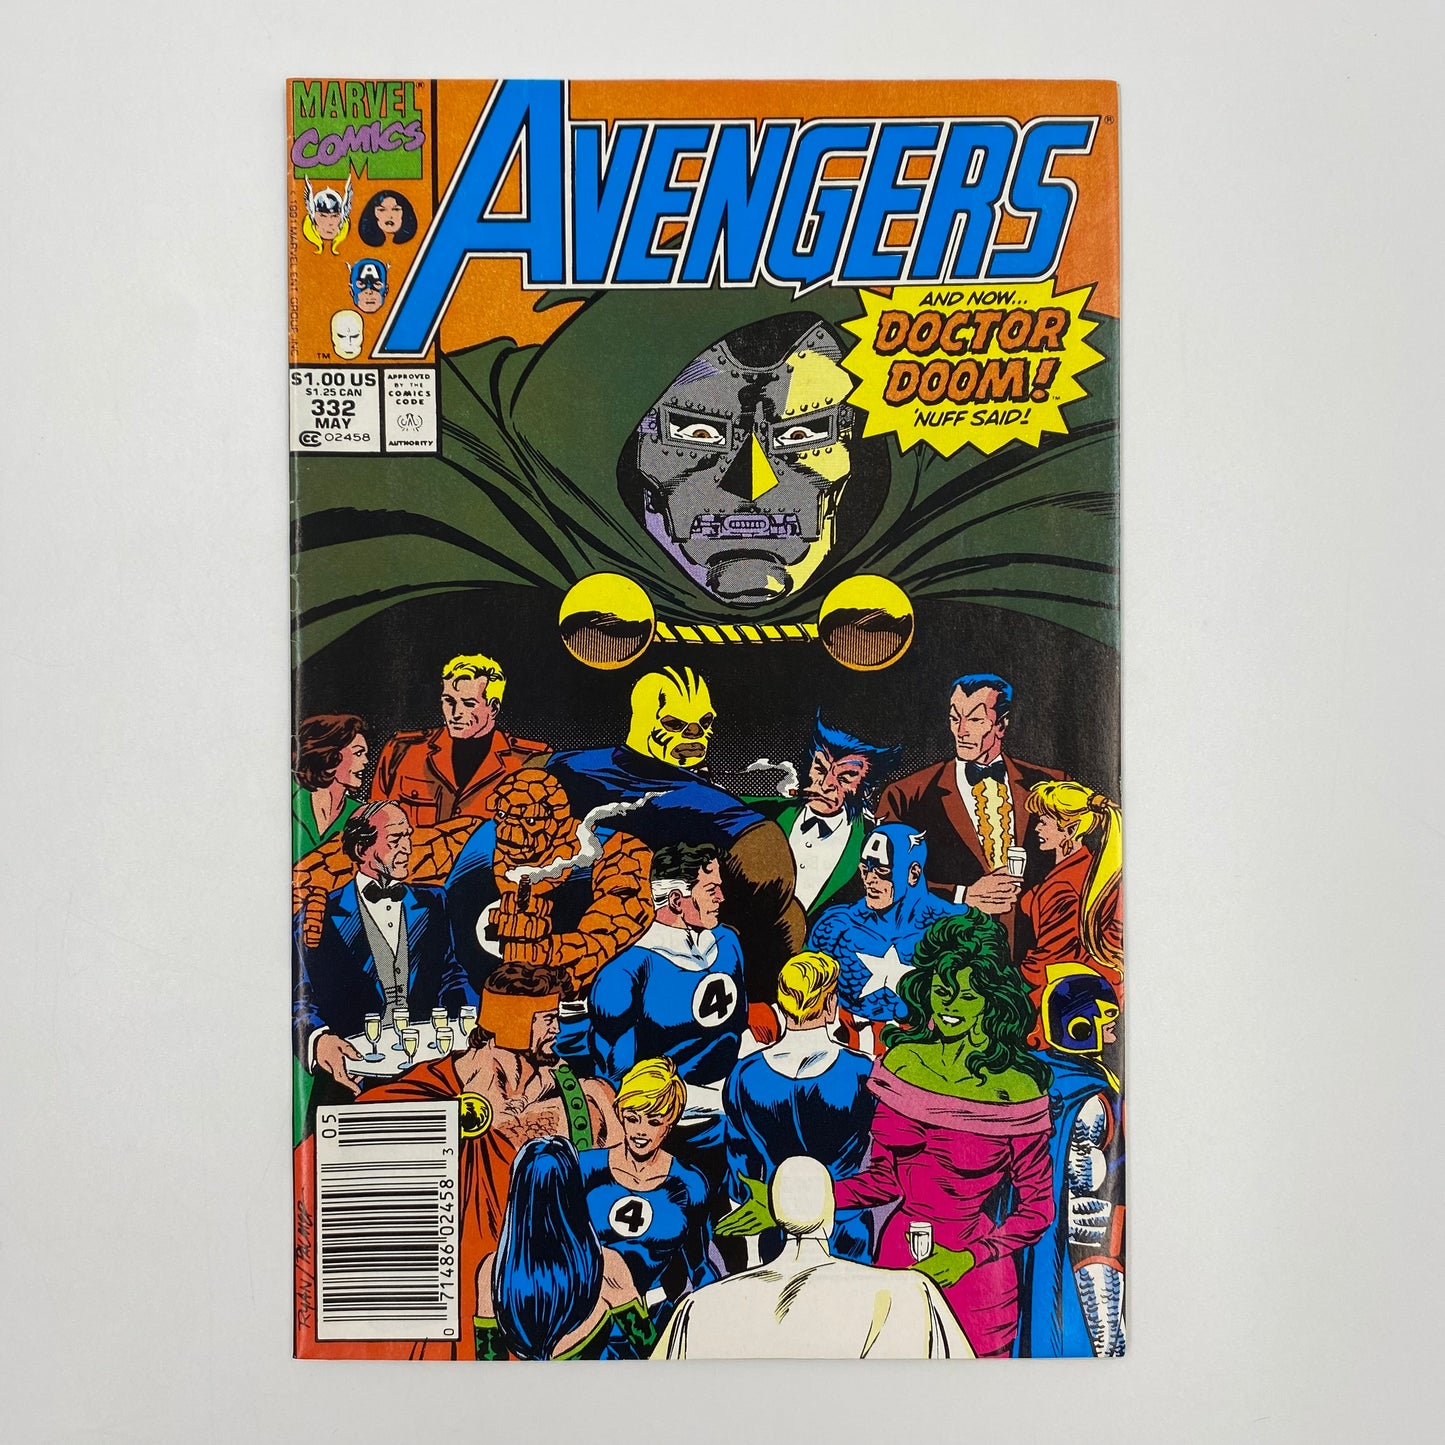 Avengers #332 & #333 (1991) Marvel